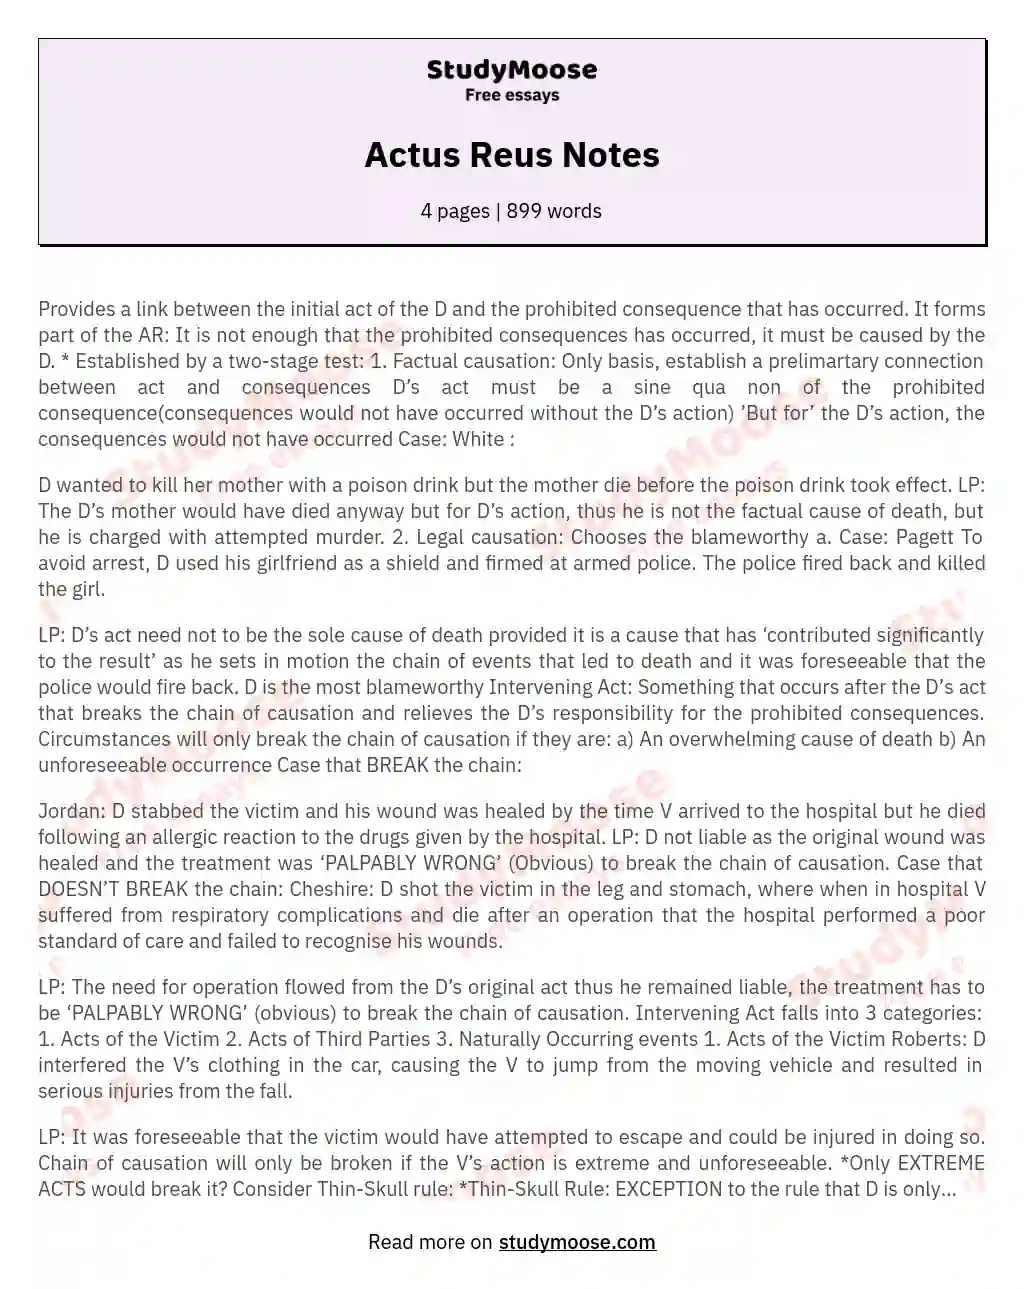 Actus Reus Notes essay